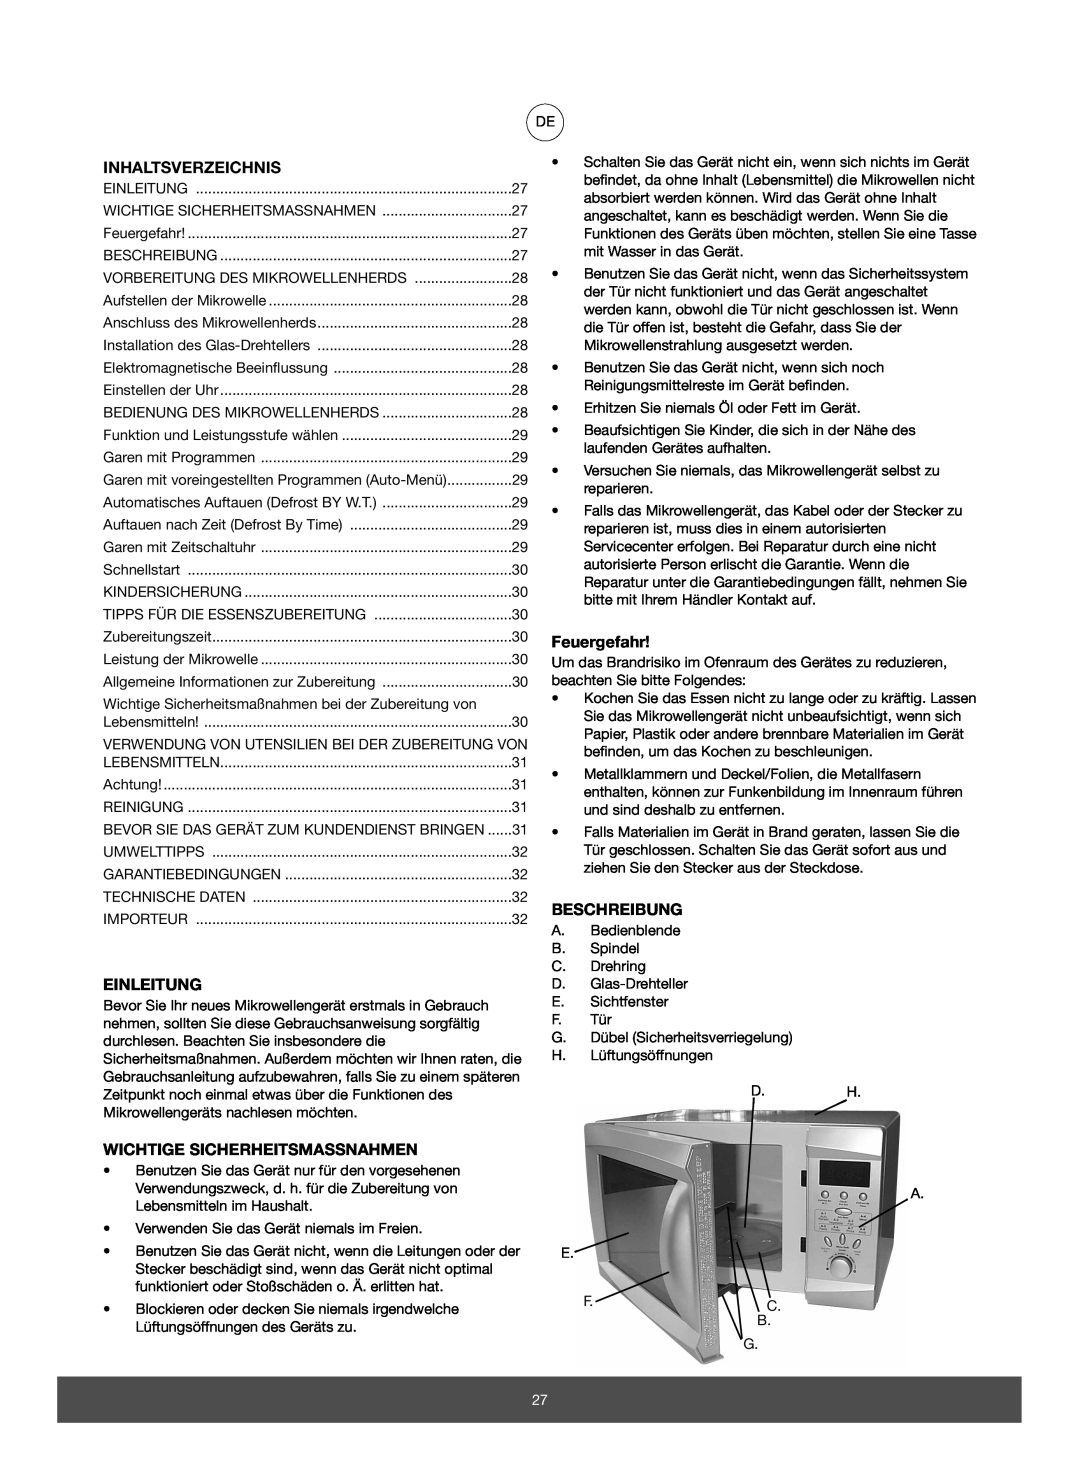 Melissa 653-082 manual Inhaltsverzeichnis, Einleitung, Wichtige Sicherheitsmassnahmen, Feuergefahr, Beschreibung 